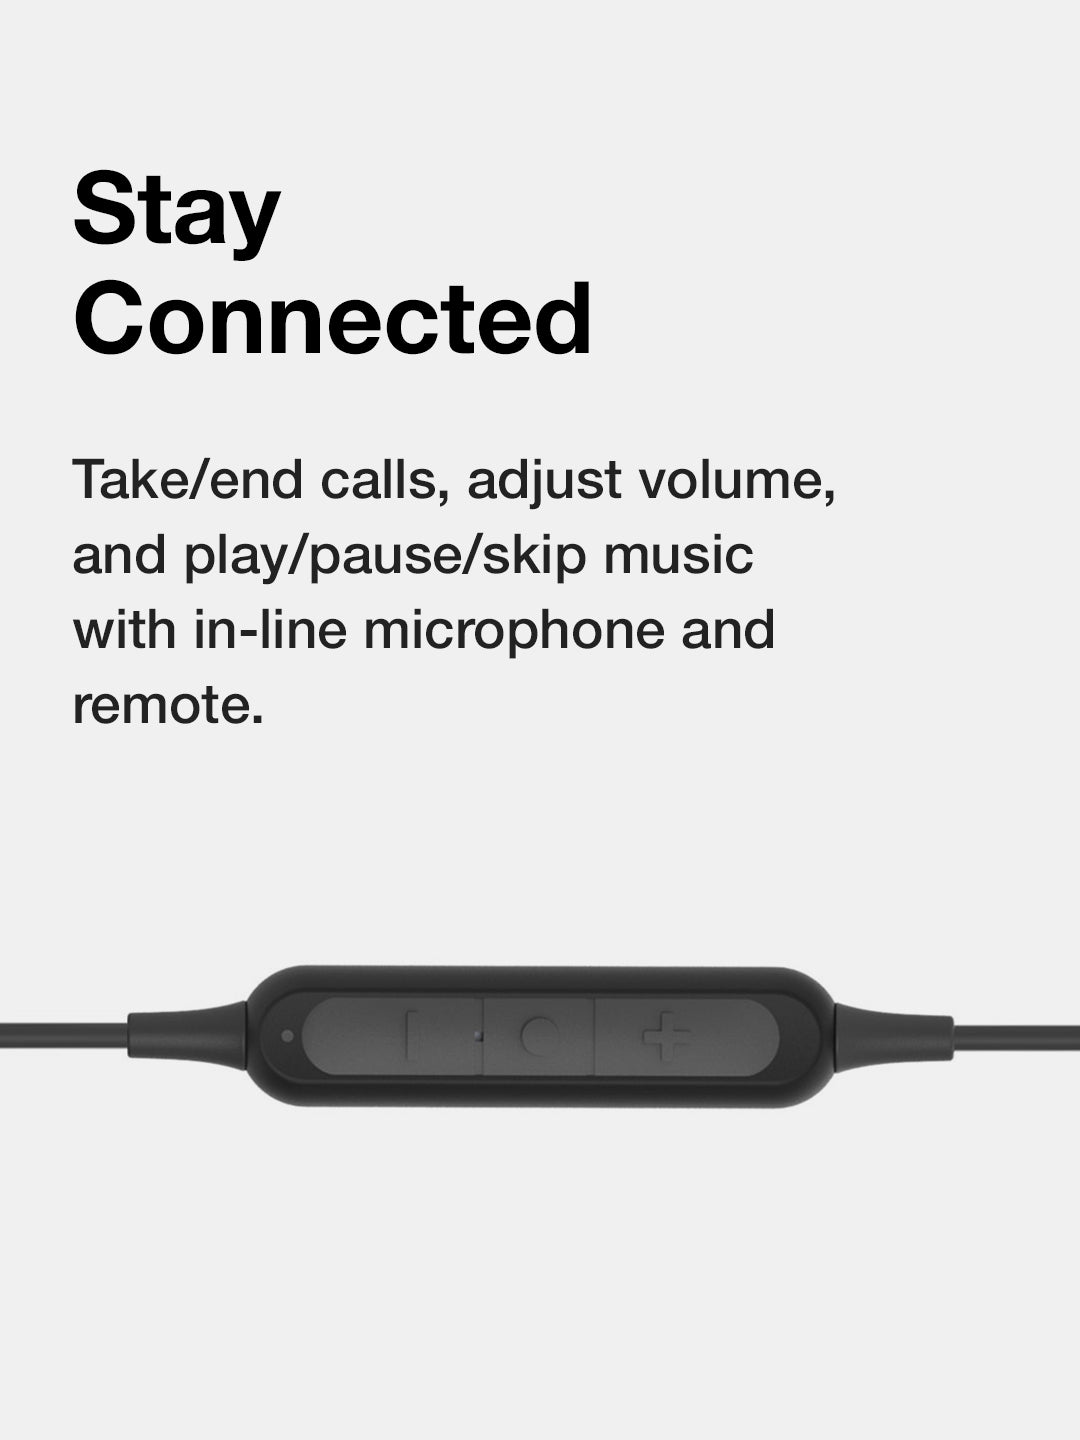 Koss BT115i - Bluetooth In-ear draadloze oordopjes